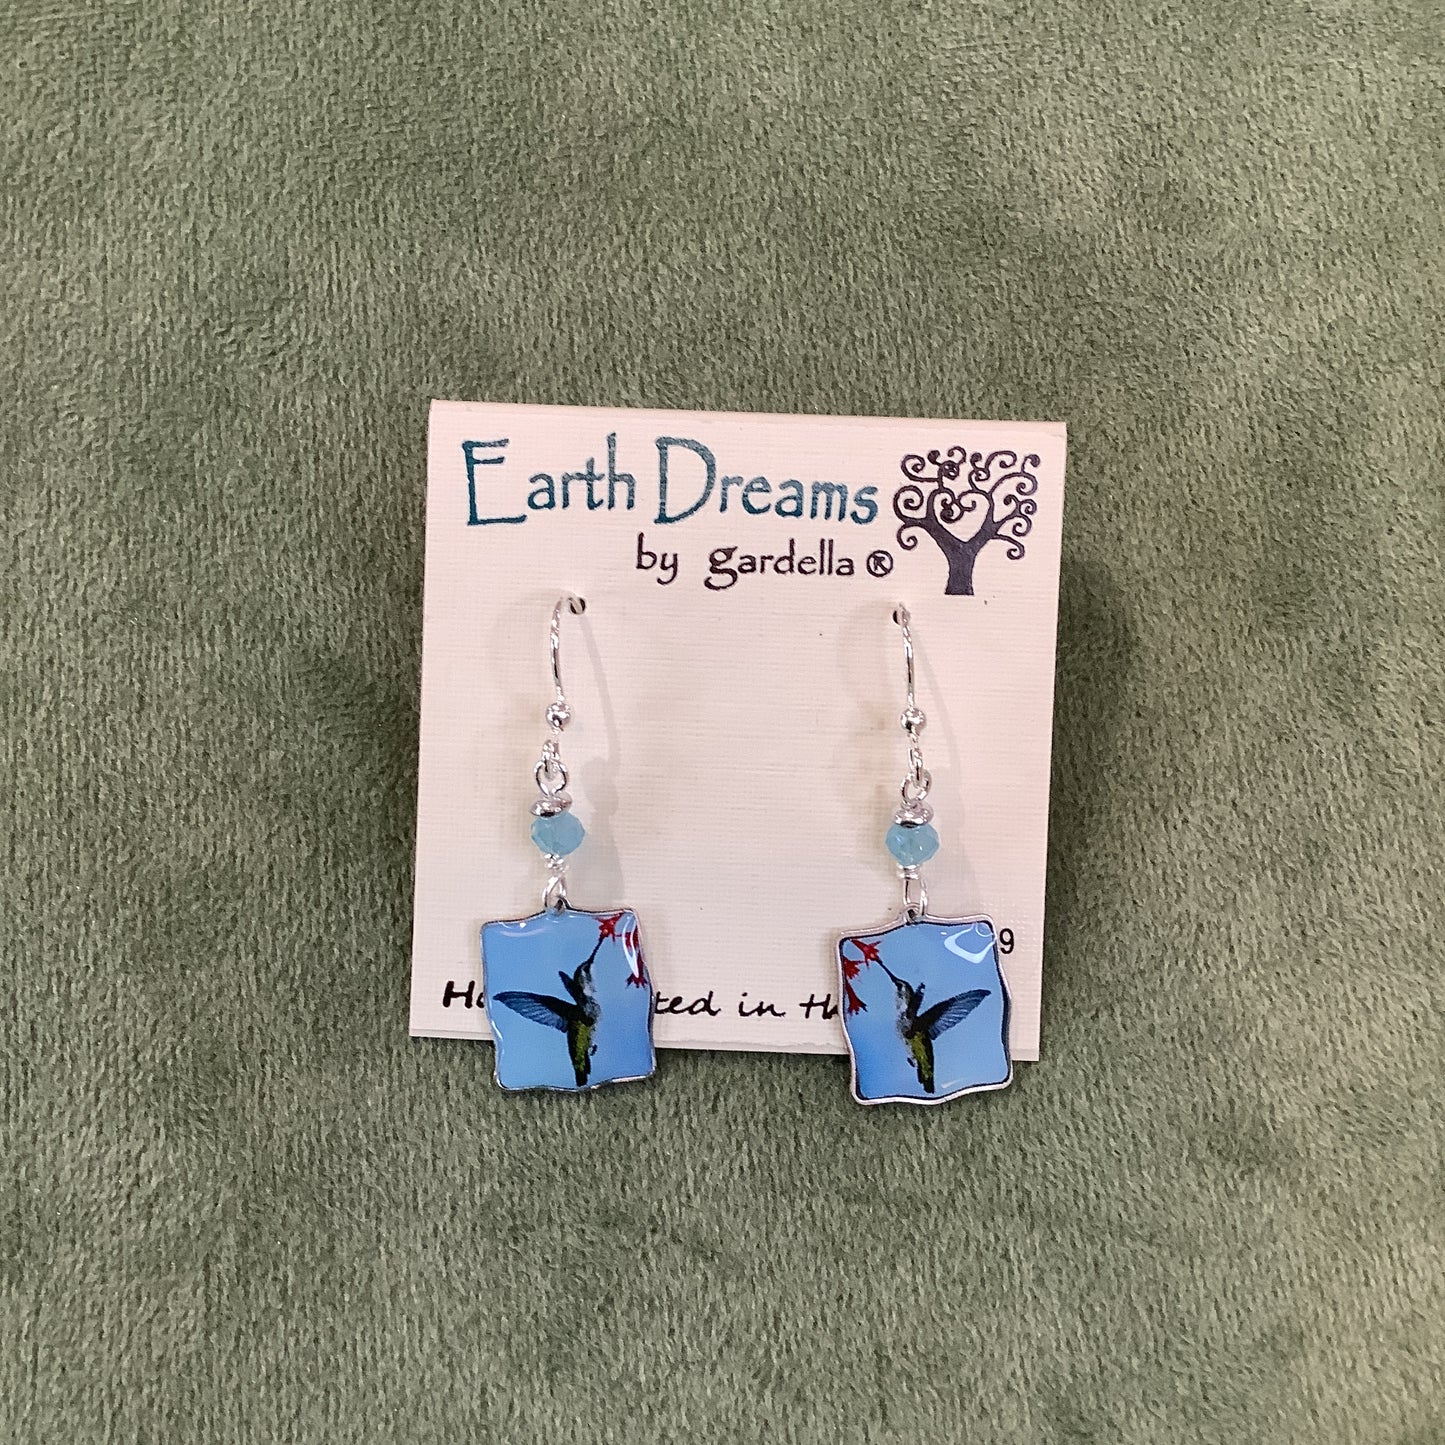 Hummingbirds earrings by Earth Dreams Jewelry